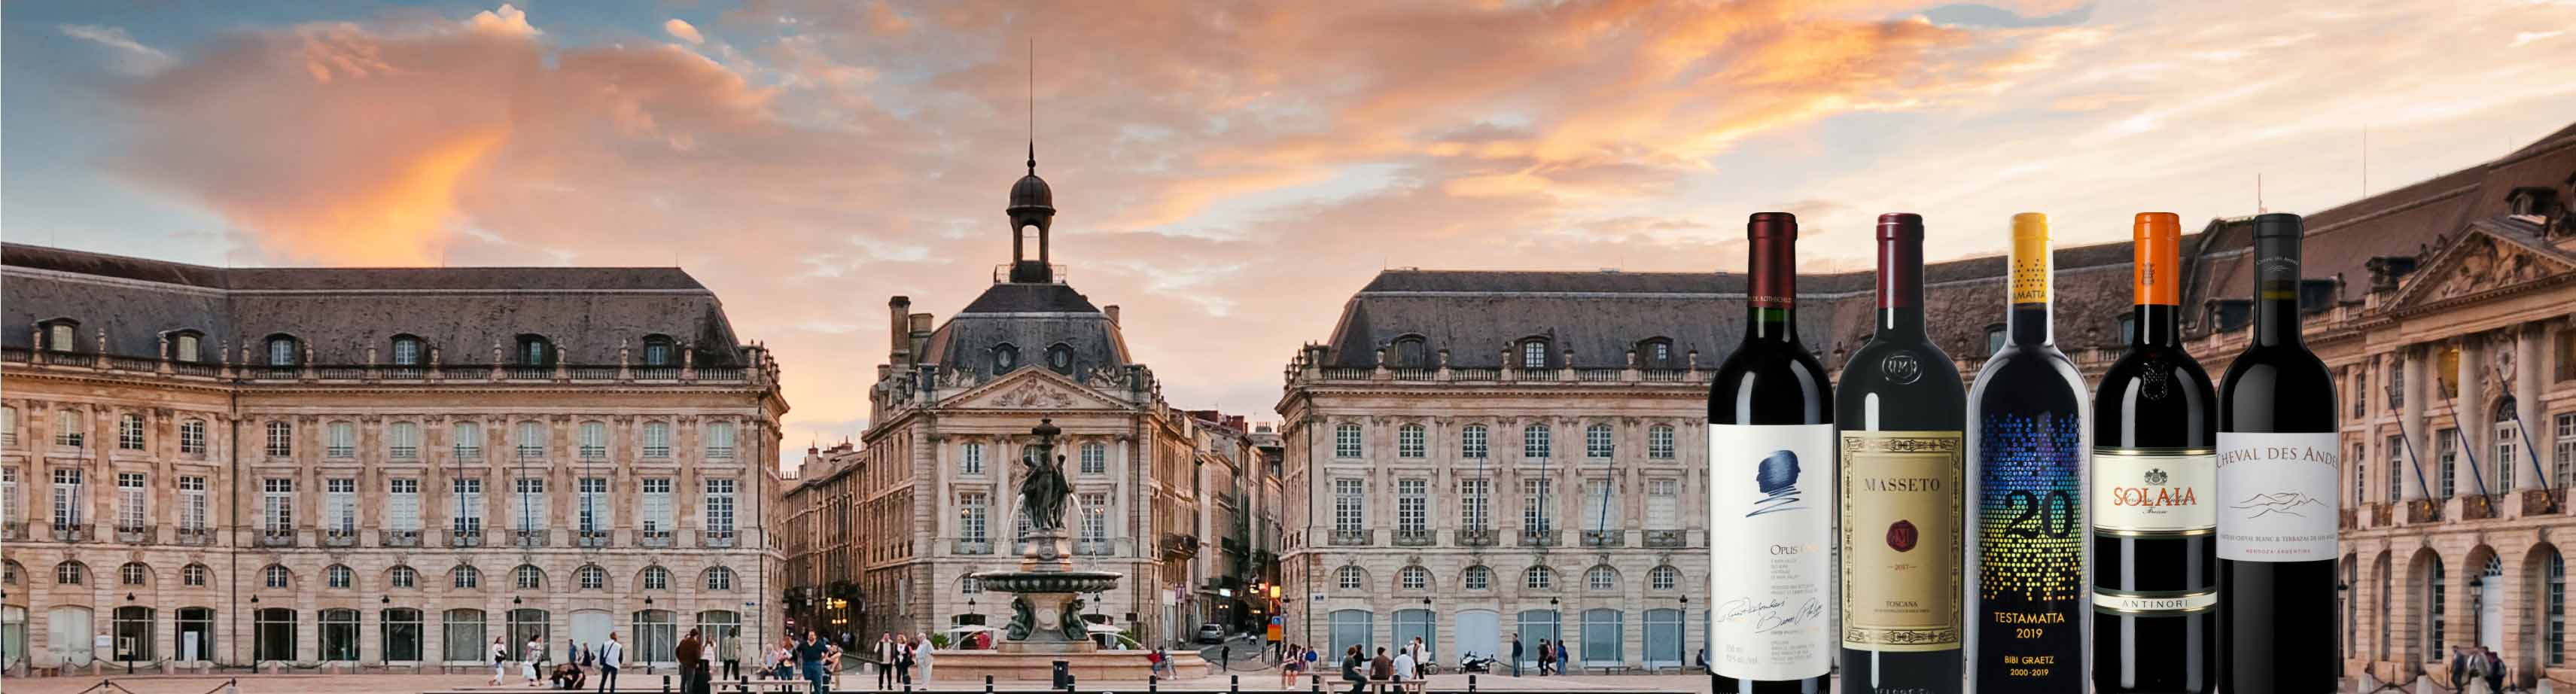 Place de la Bourse de Bordeaux, Sonnenaufgang